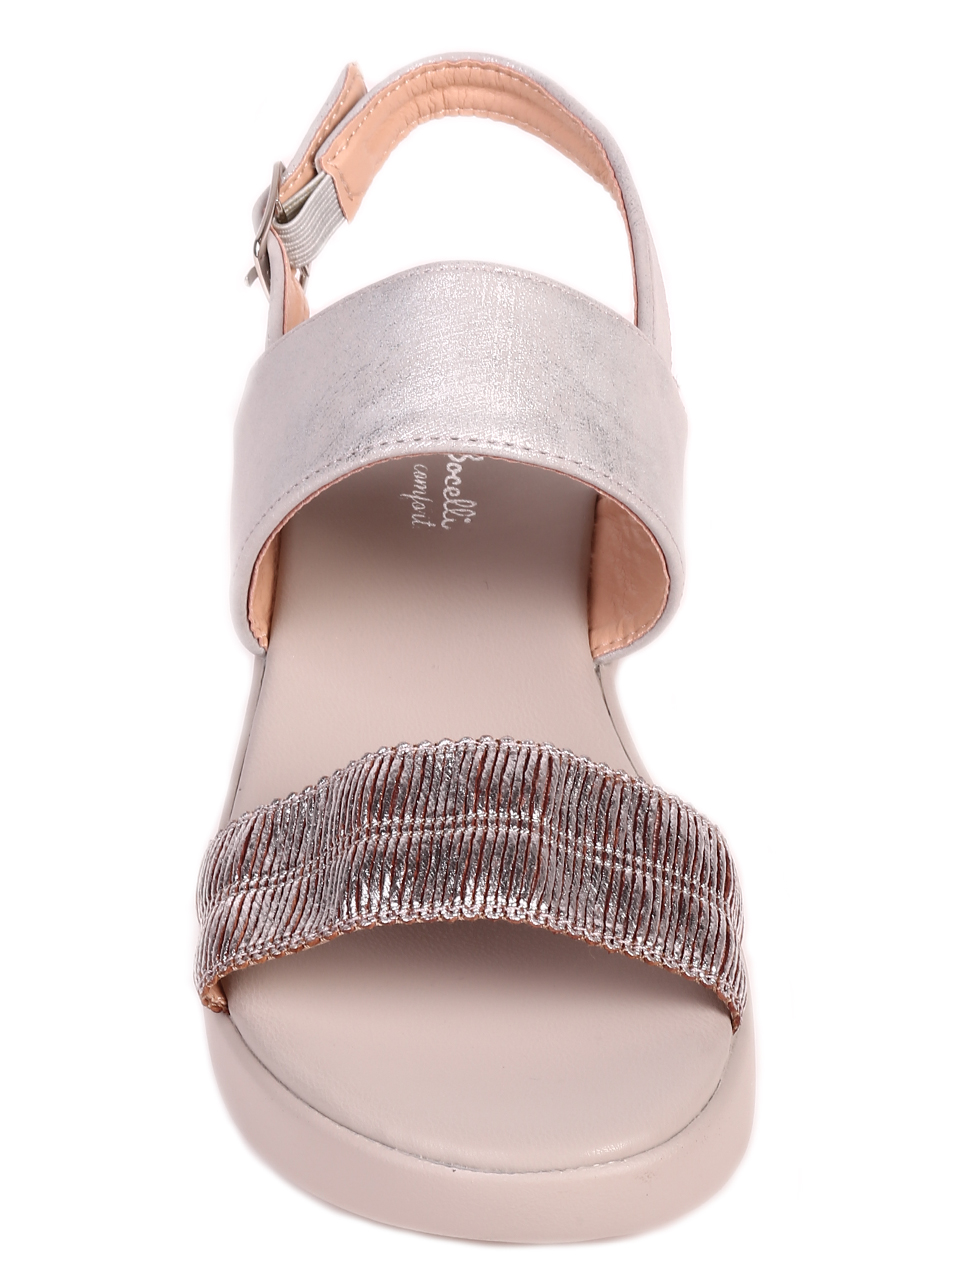 Ежедневни дамски комфортни сандали на платформа 4C-21134 silver